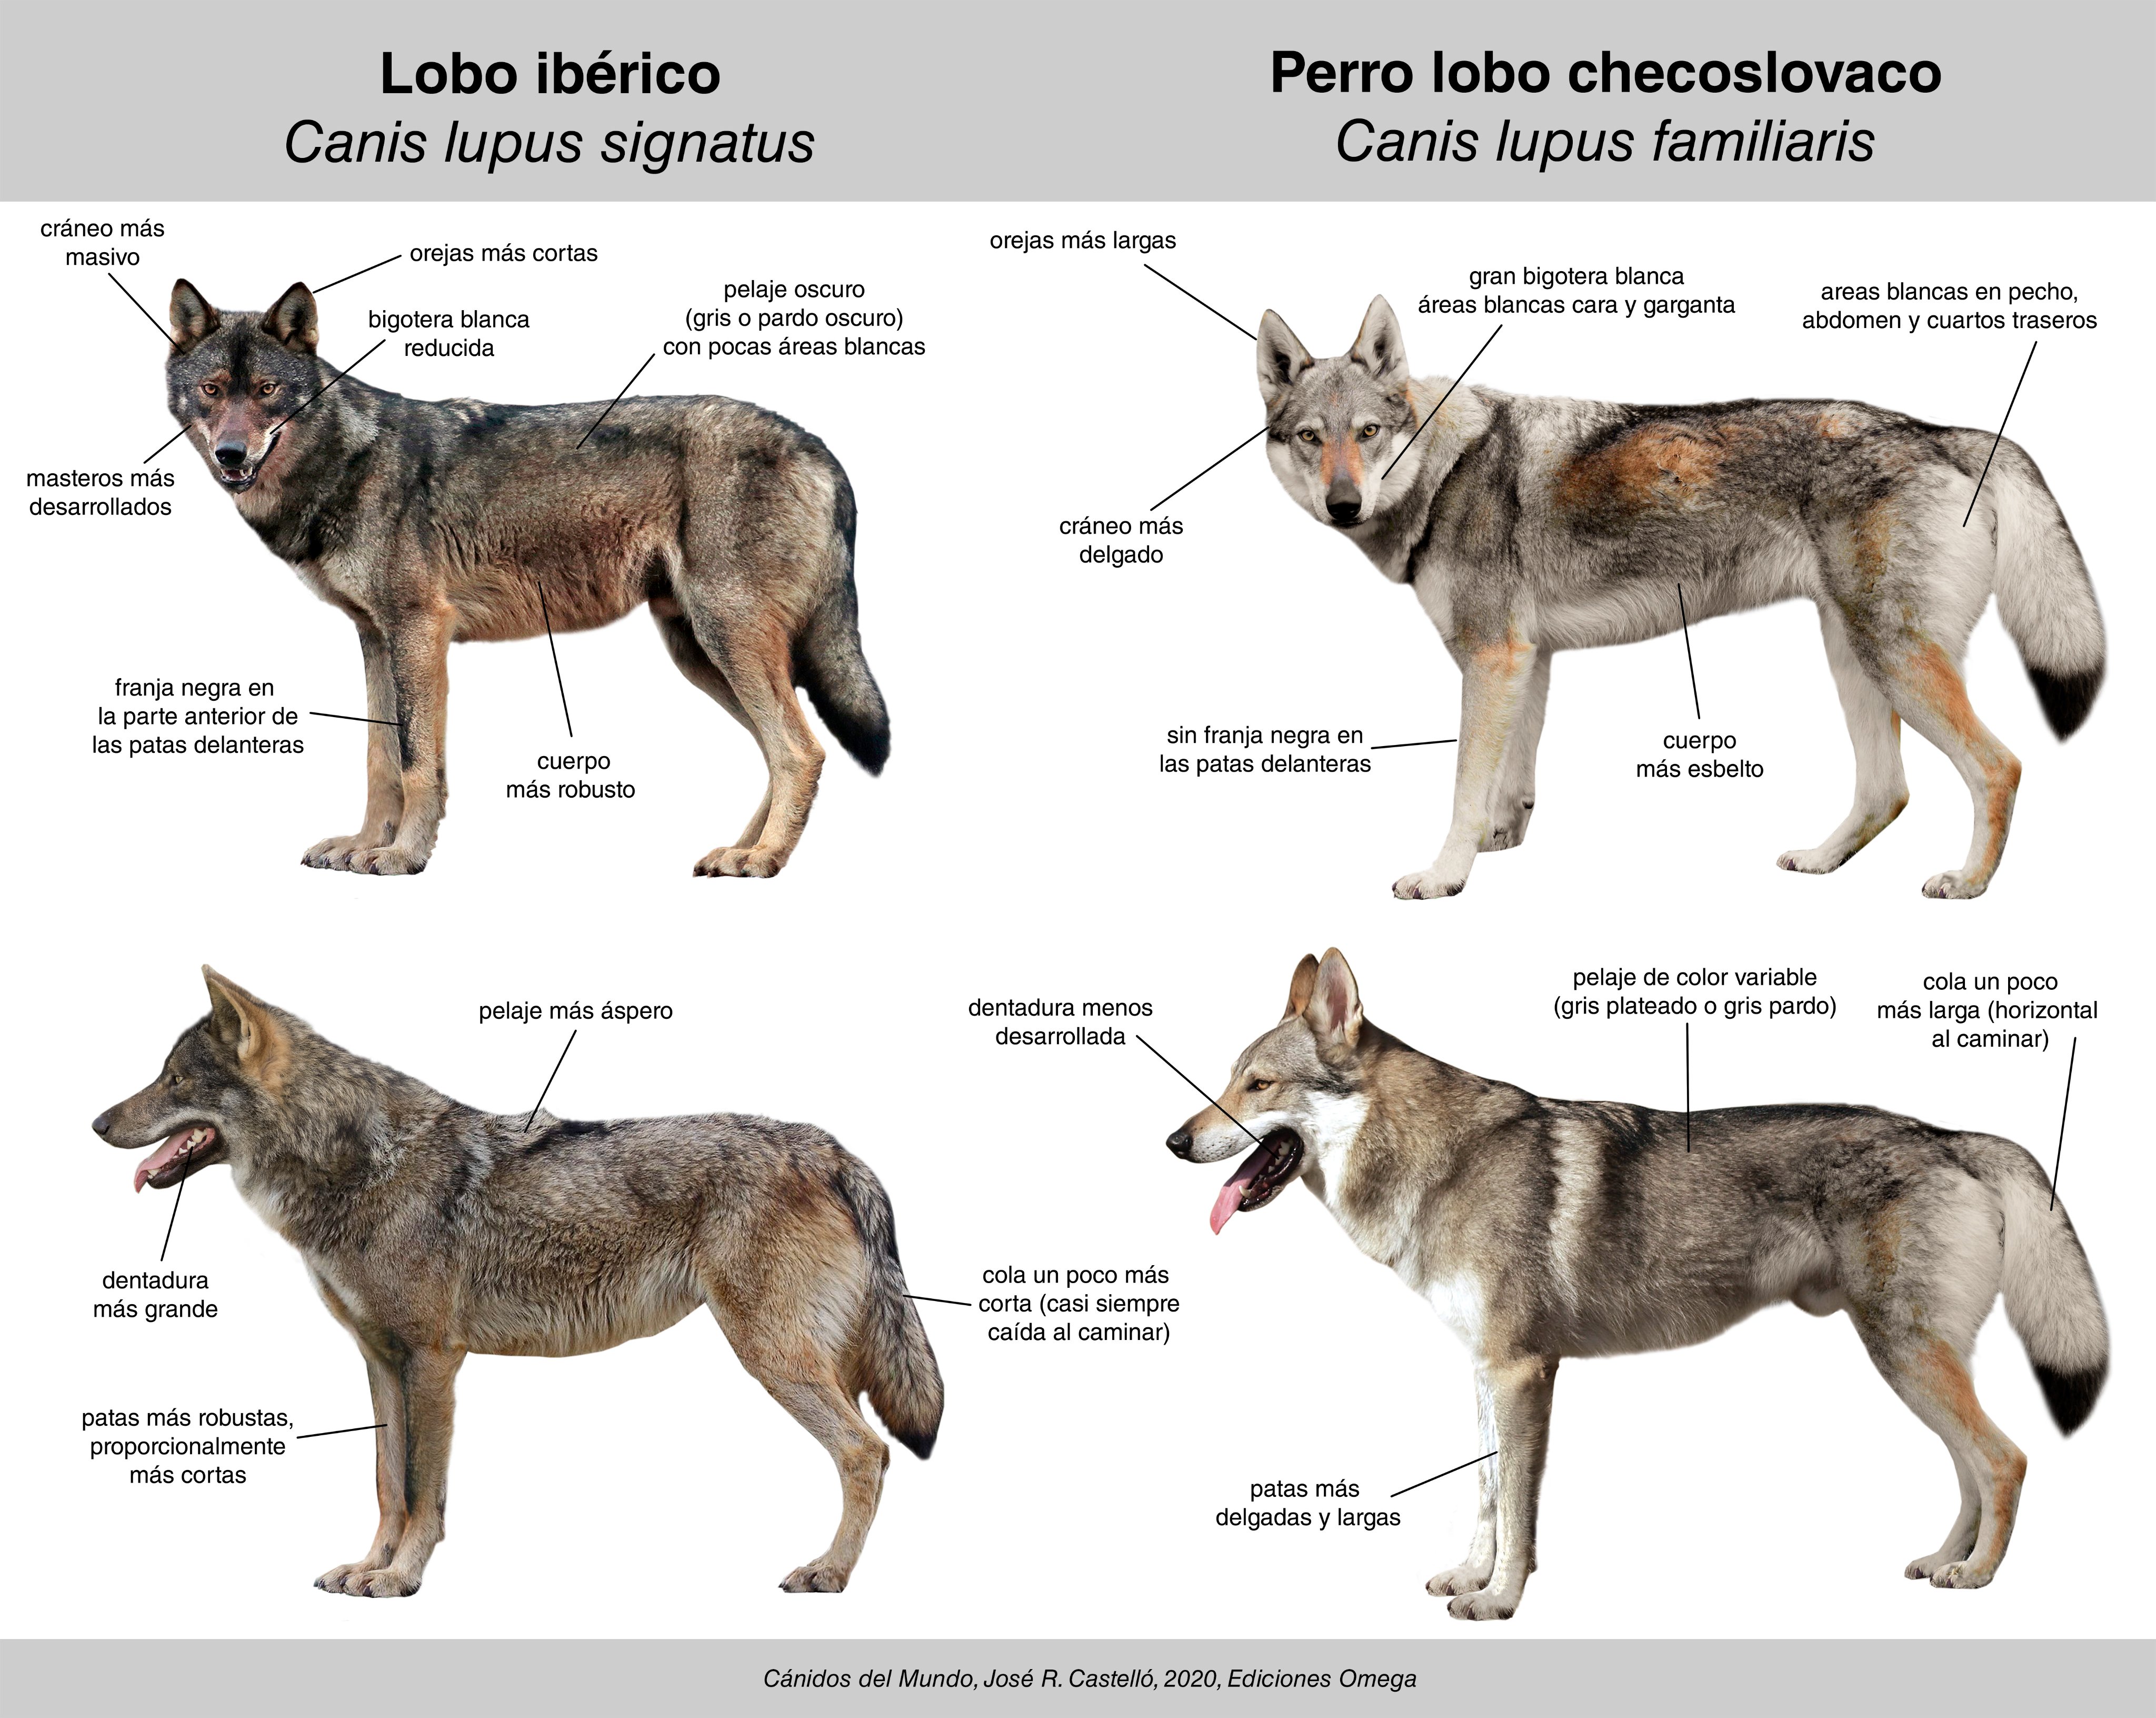 Relajante Error Teoría establecida Dr. Jose R. Castello on Twitter: "¿Cómo diferenciar un lobo ibérico (Canis  lupus signatus) de un perro lobo checoslovaco (C. l. familiaris), una raza  de perro doméstico? Es otra de las preguntas